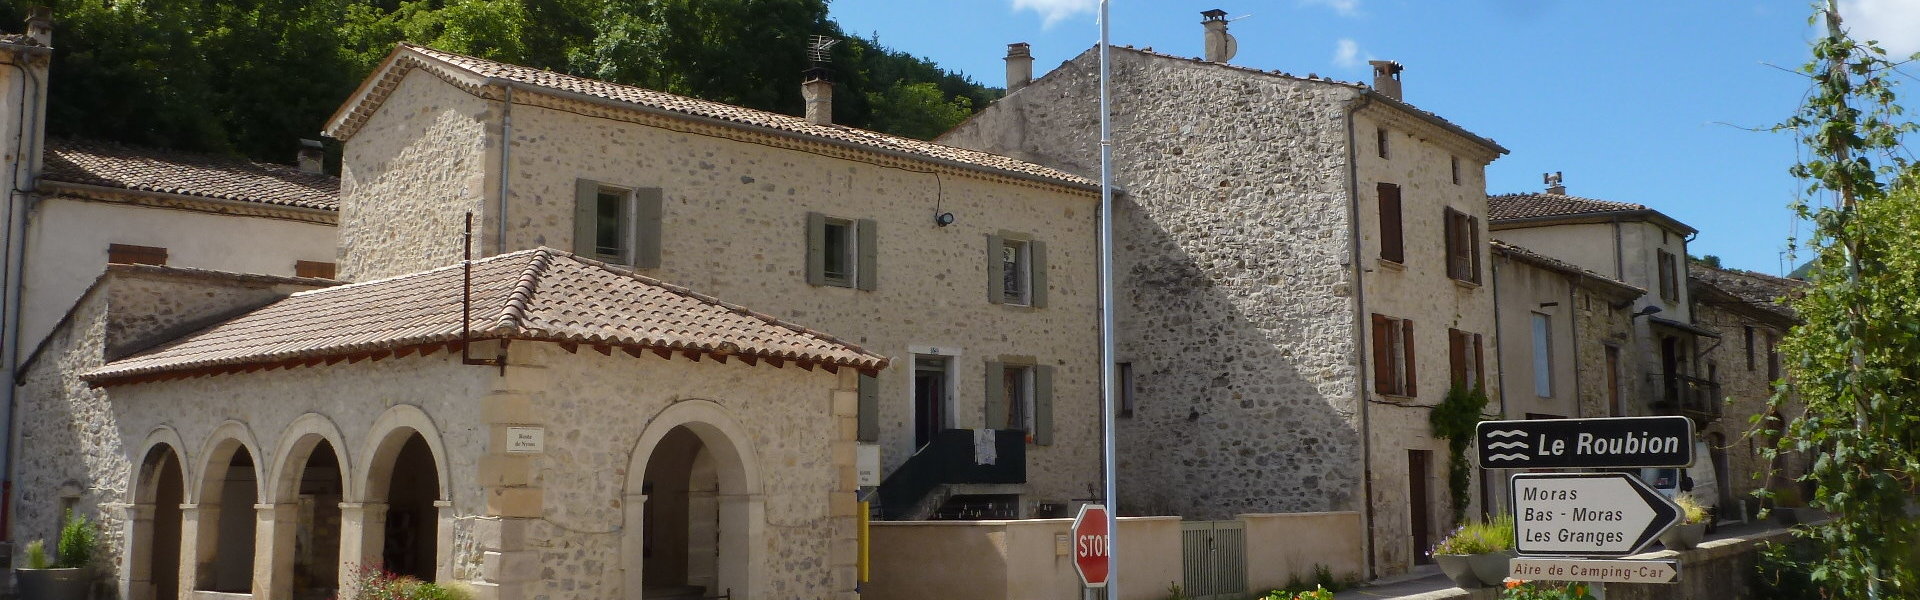 Projets communaux - Commune de Bouvières - Département de la Drôme